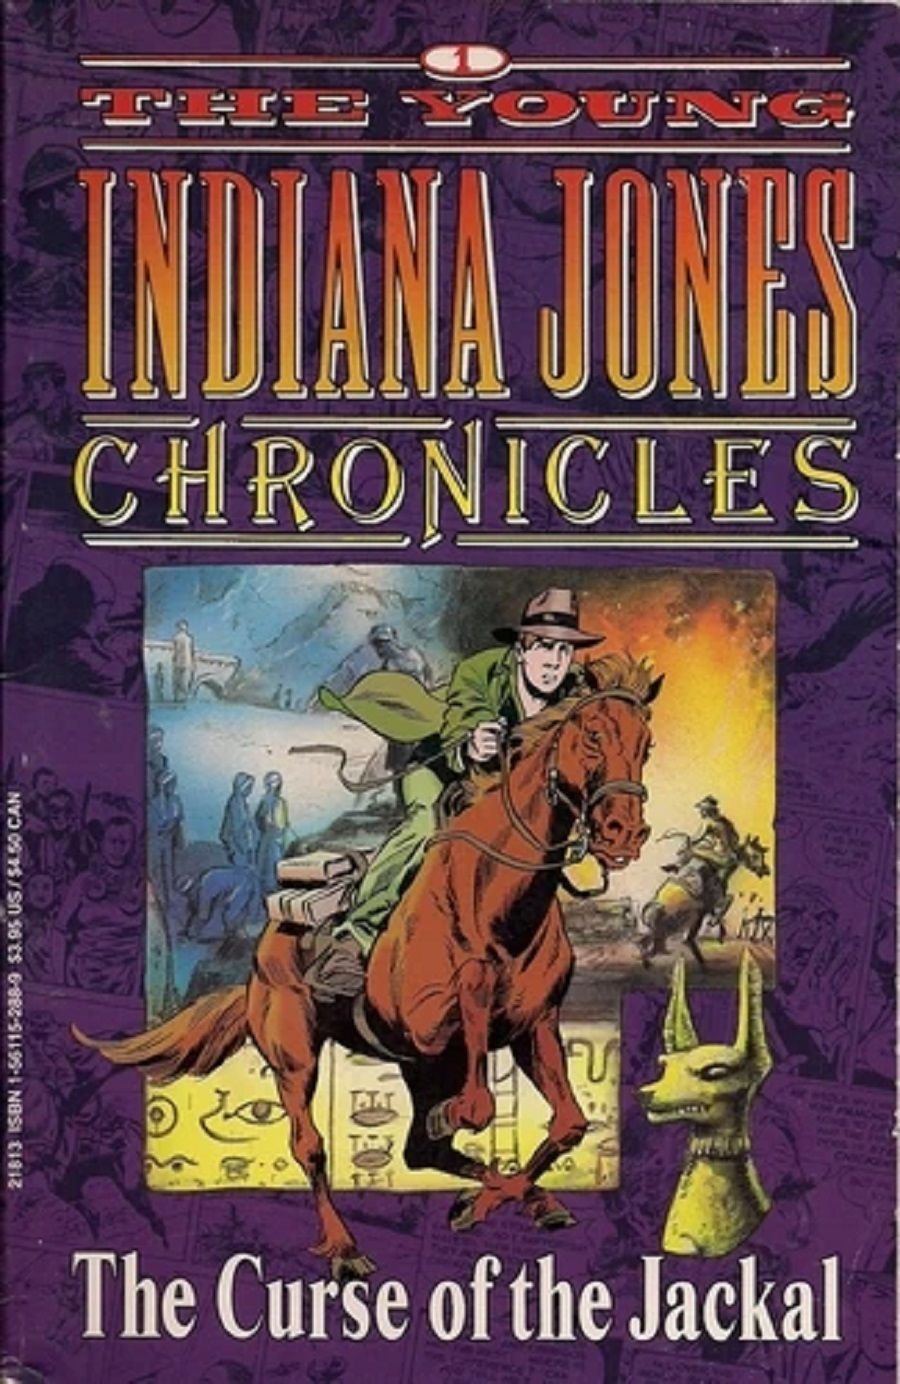 Indiana Jones Chronciles em uma brochura comercial